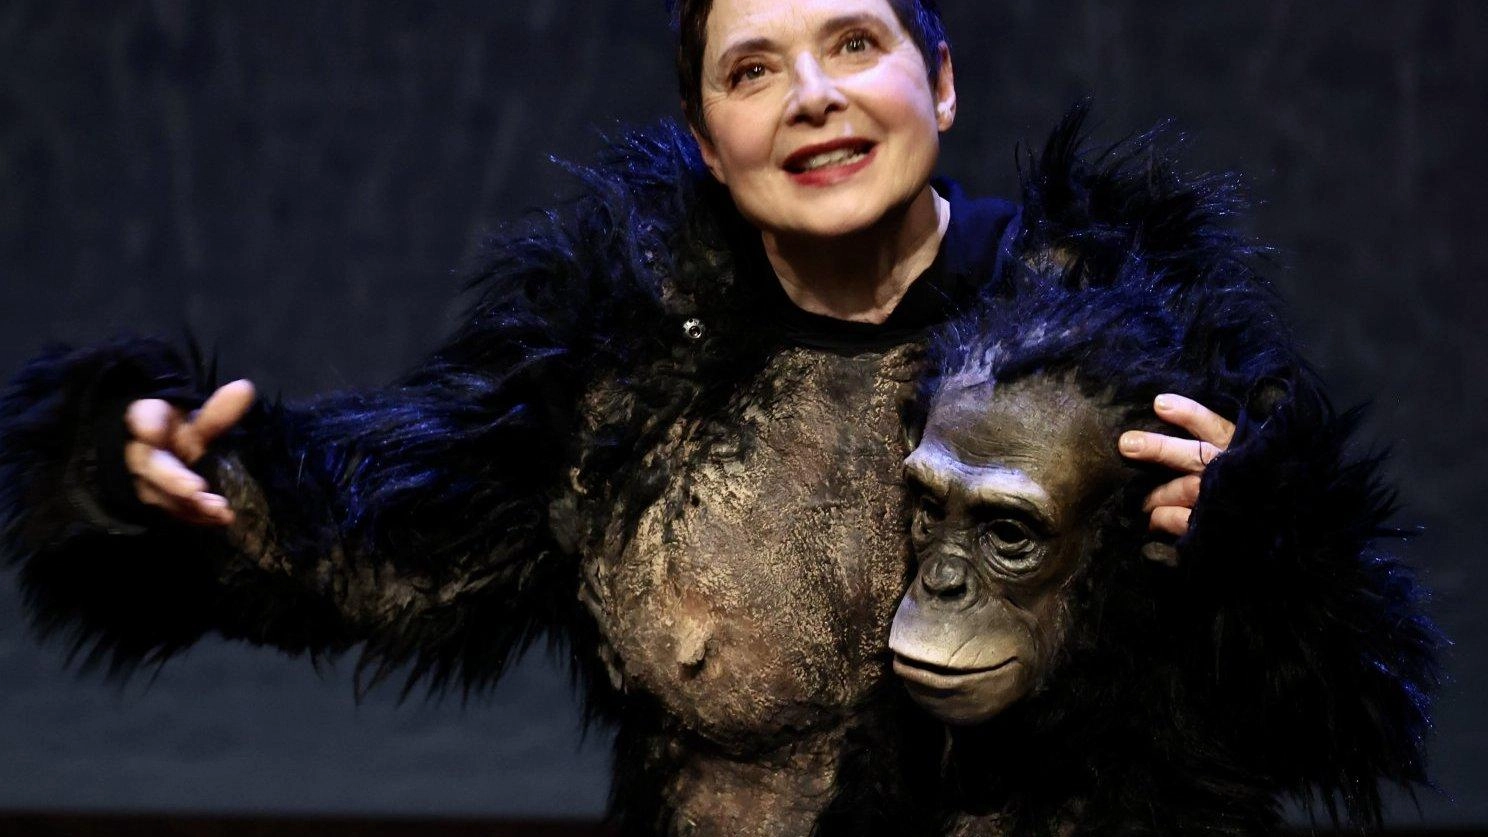 Isabella Rossellini, etologa a teatro: "Con gli animali un dialogo continuo"